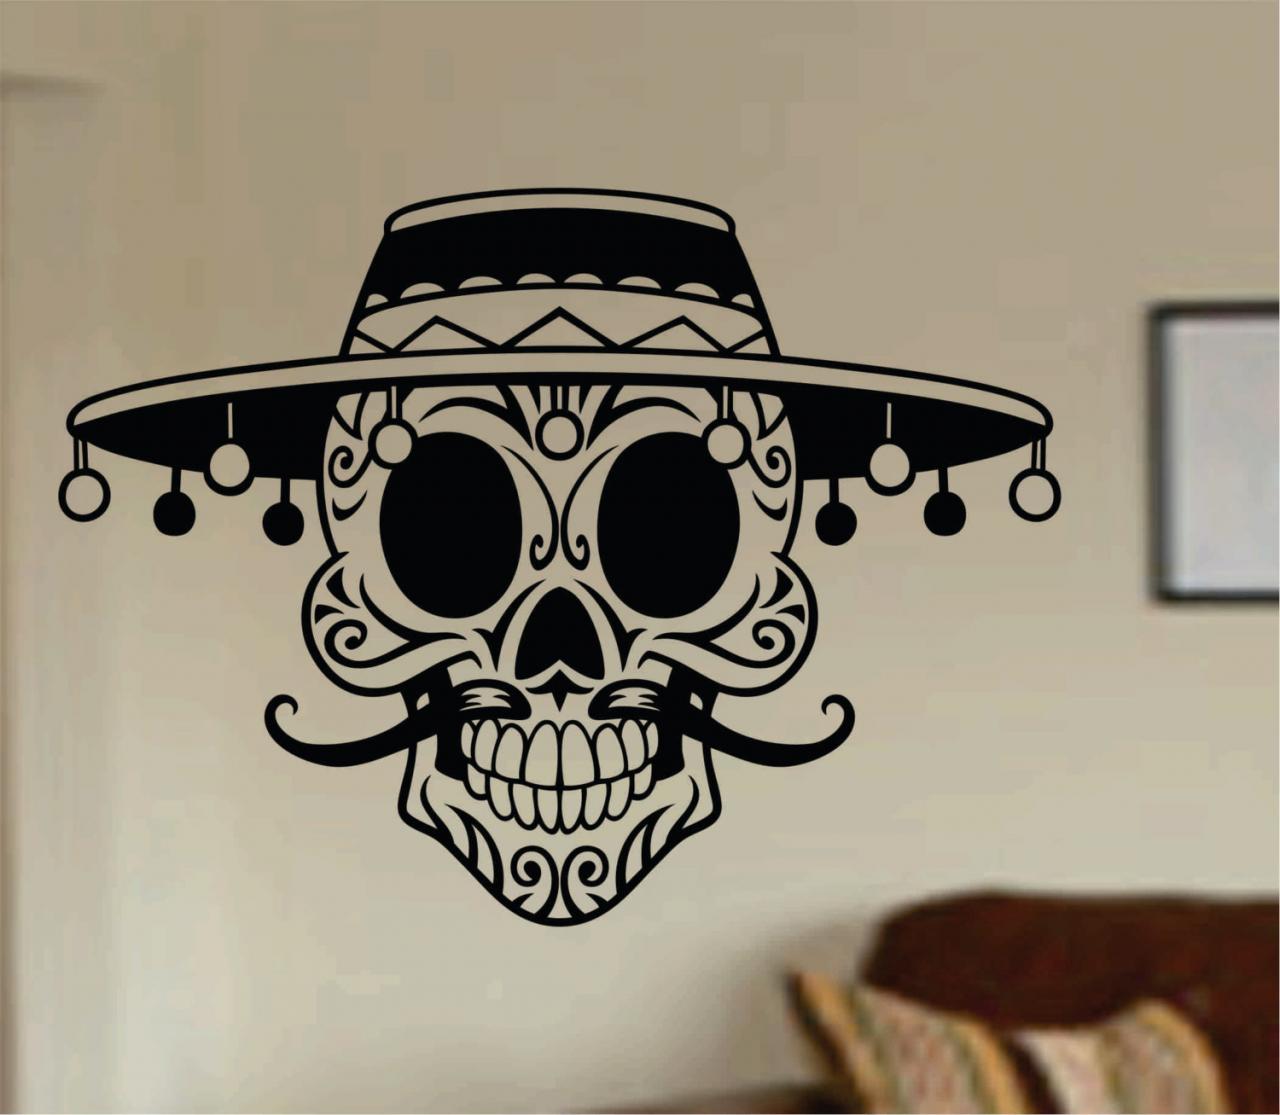 Mustache Day Of The Dead Skull Wall Vinyl Decal Sticker Art Graphic Sticker Sugar Skull Sugarskull